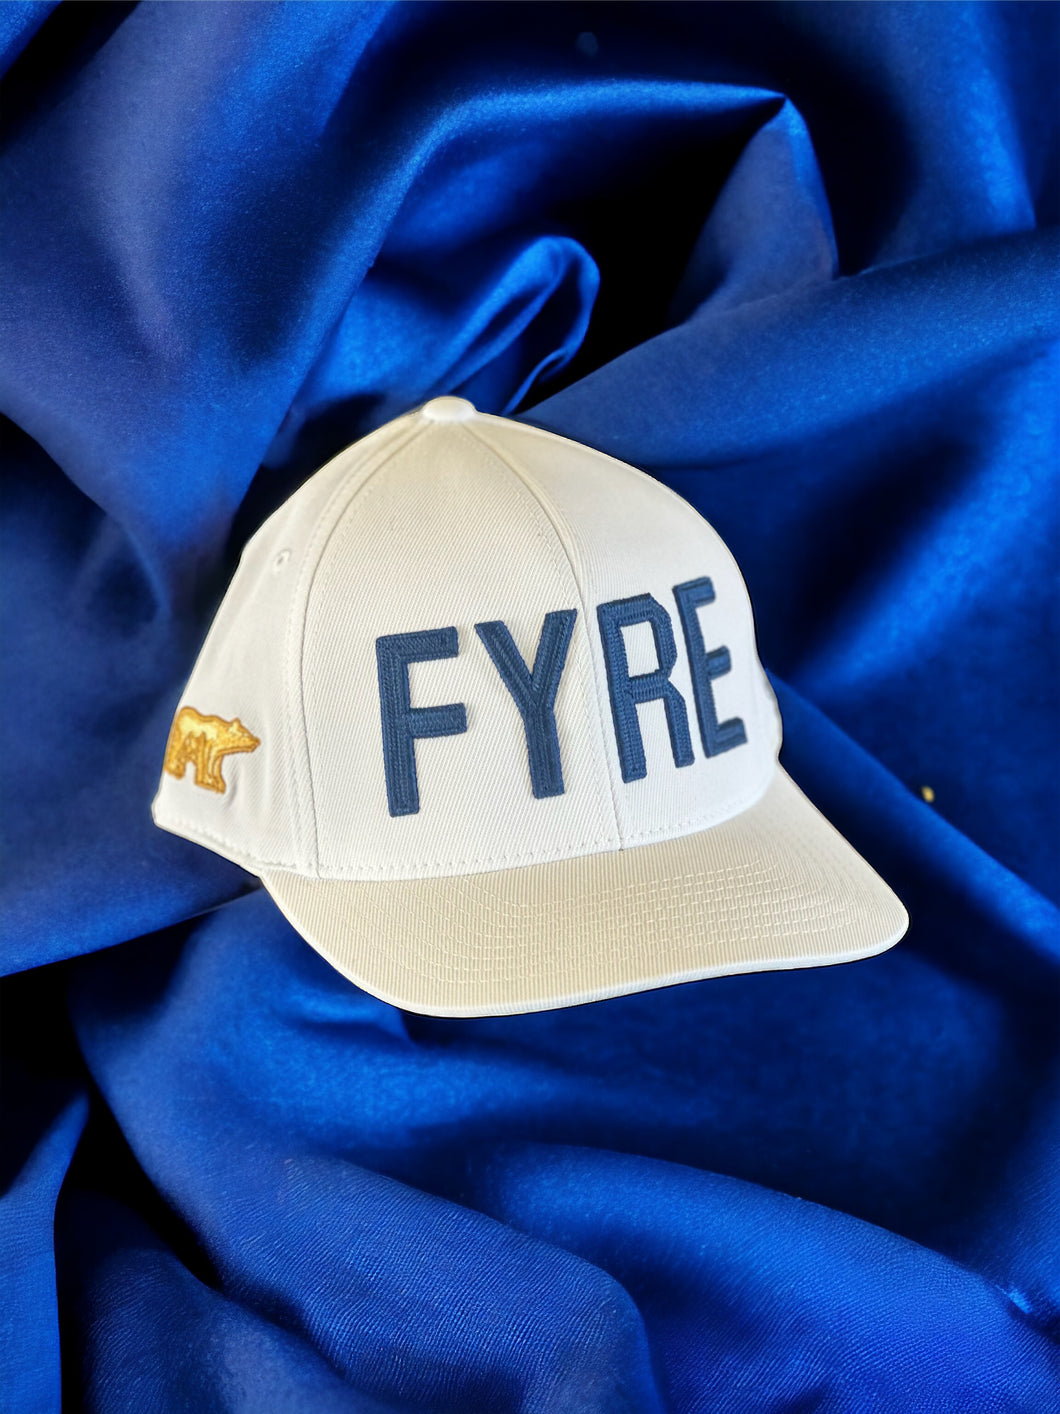 Gfore Fyre Hat